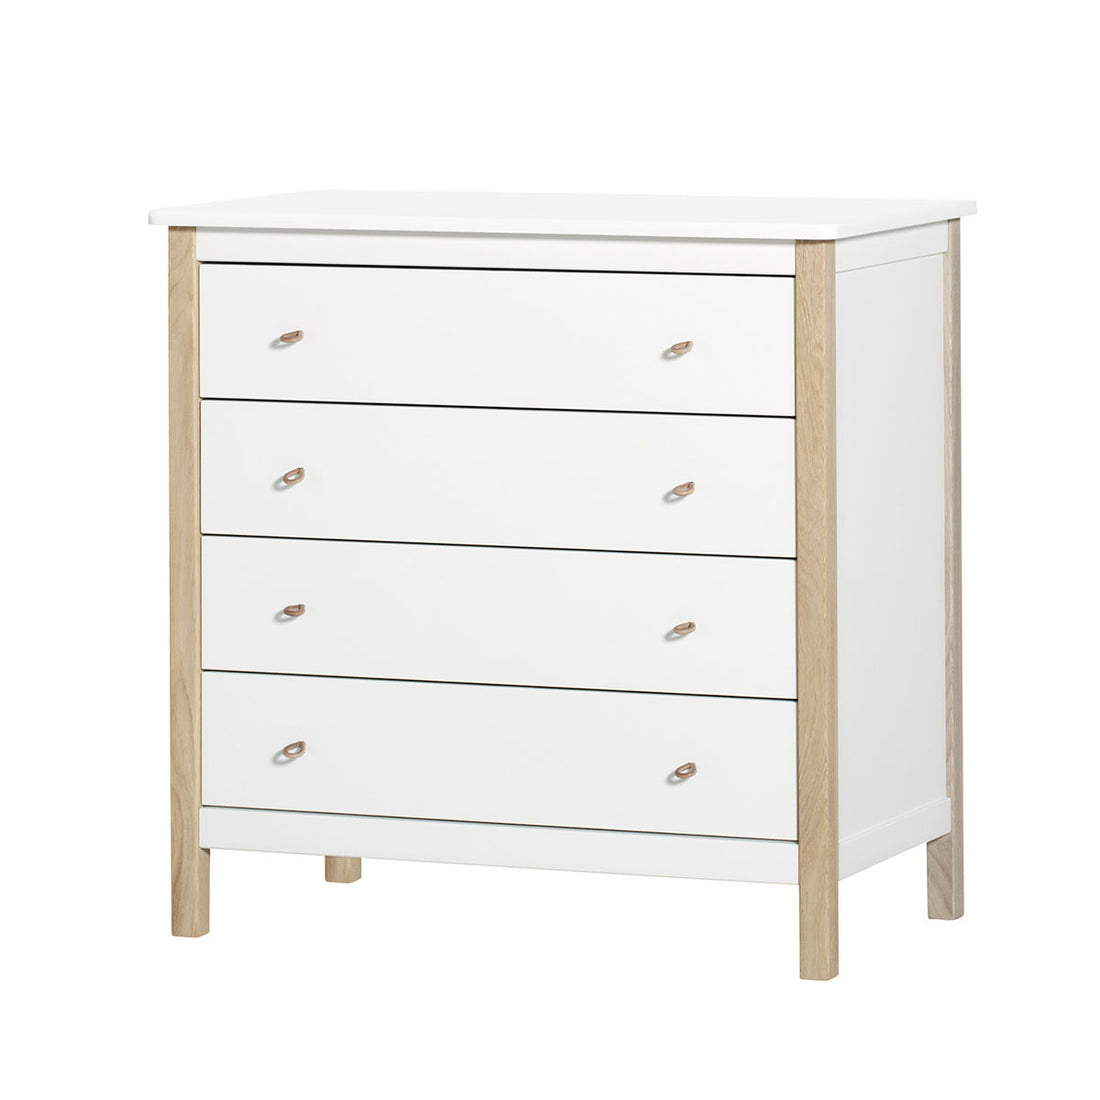 oliver-furniture-wood-dresser-4-drawers-white-oak- (2)